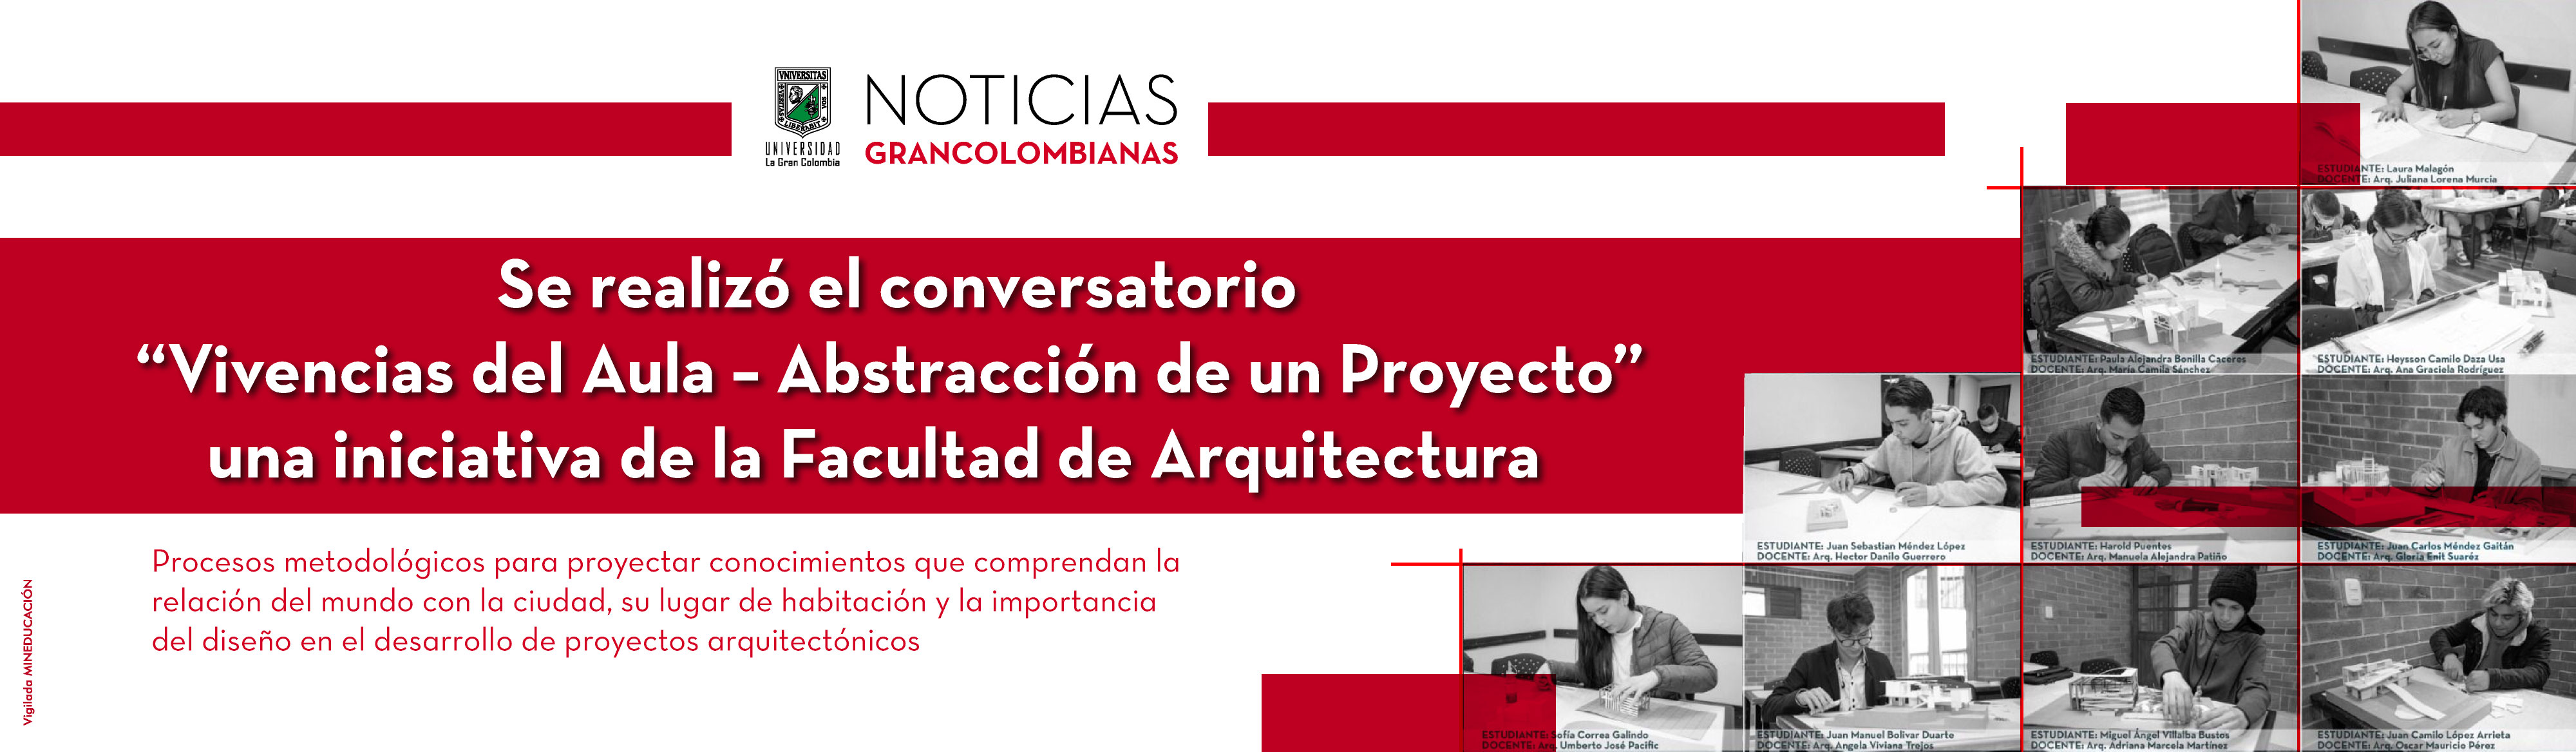 Se realizó el conversatorio “Vivencias del Aula – Abstracción de un Proyecto” una iniciativa de la Facultad de Arquitectura